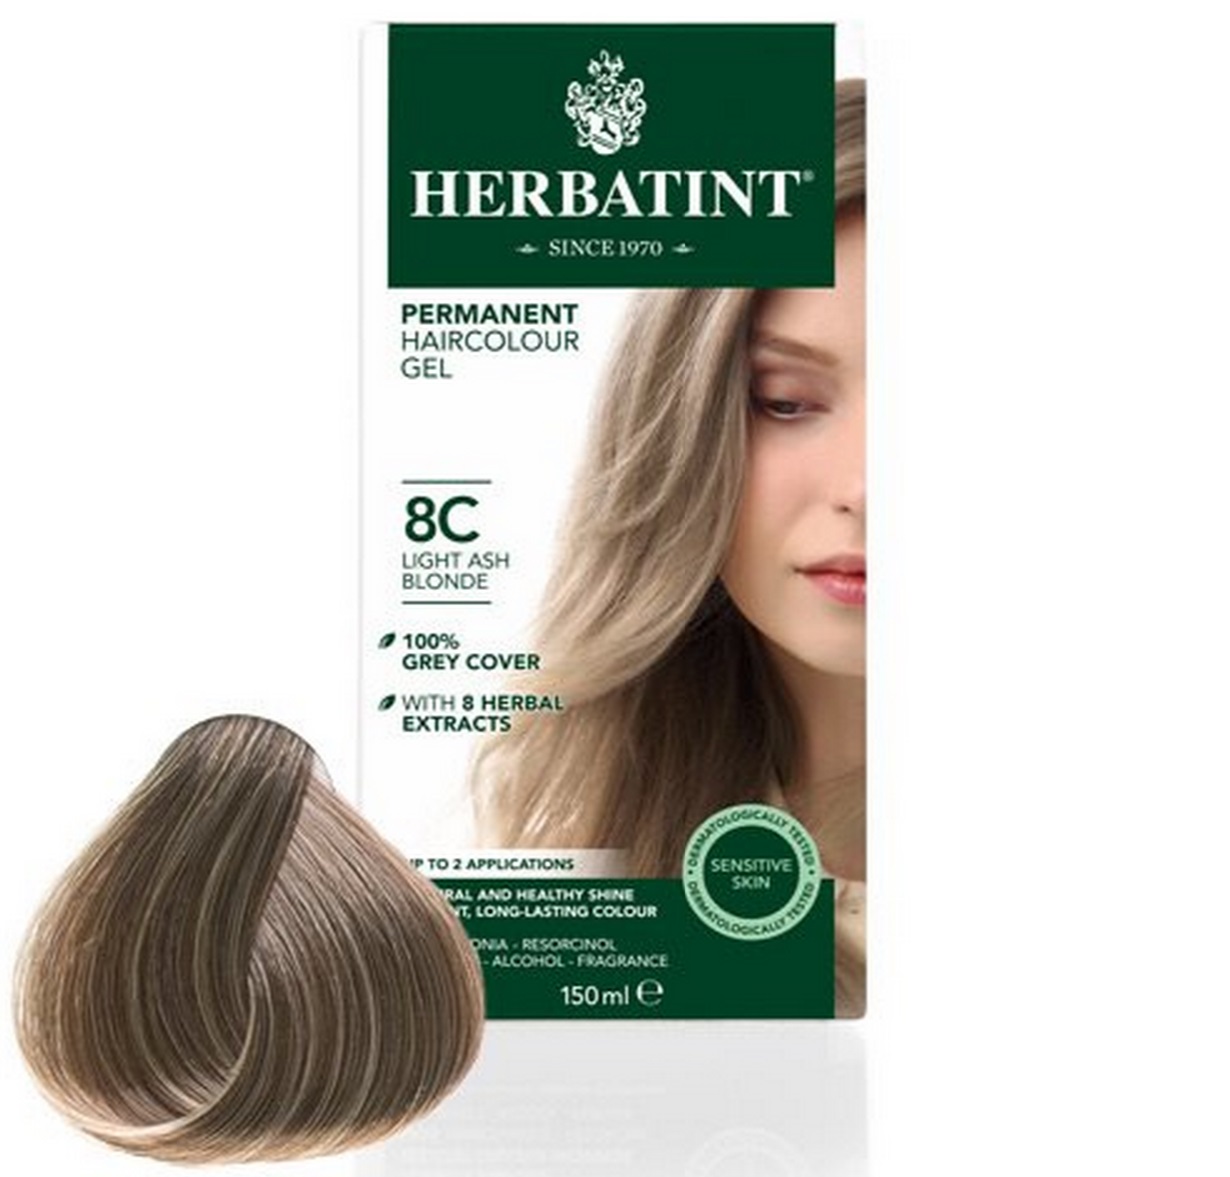 Billede af Herbatint 8C hårfarve Light Ash Blonde, 150ml.